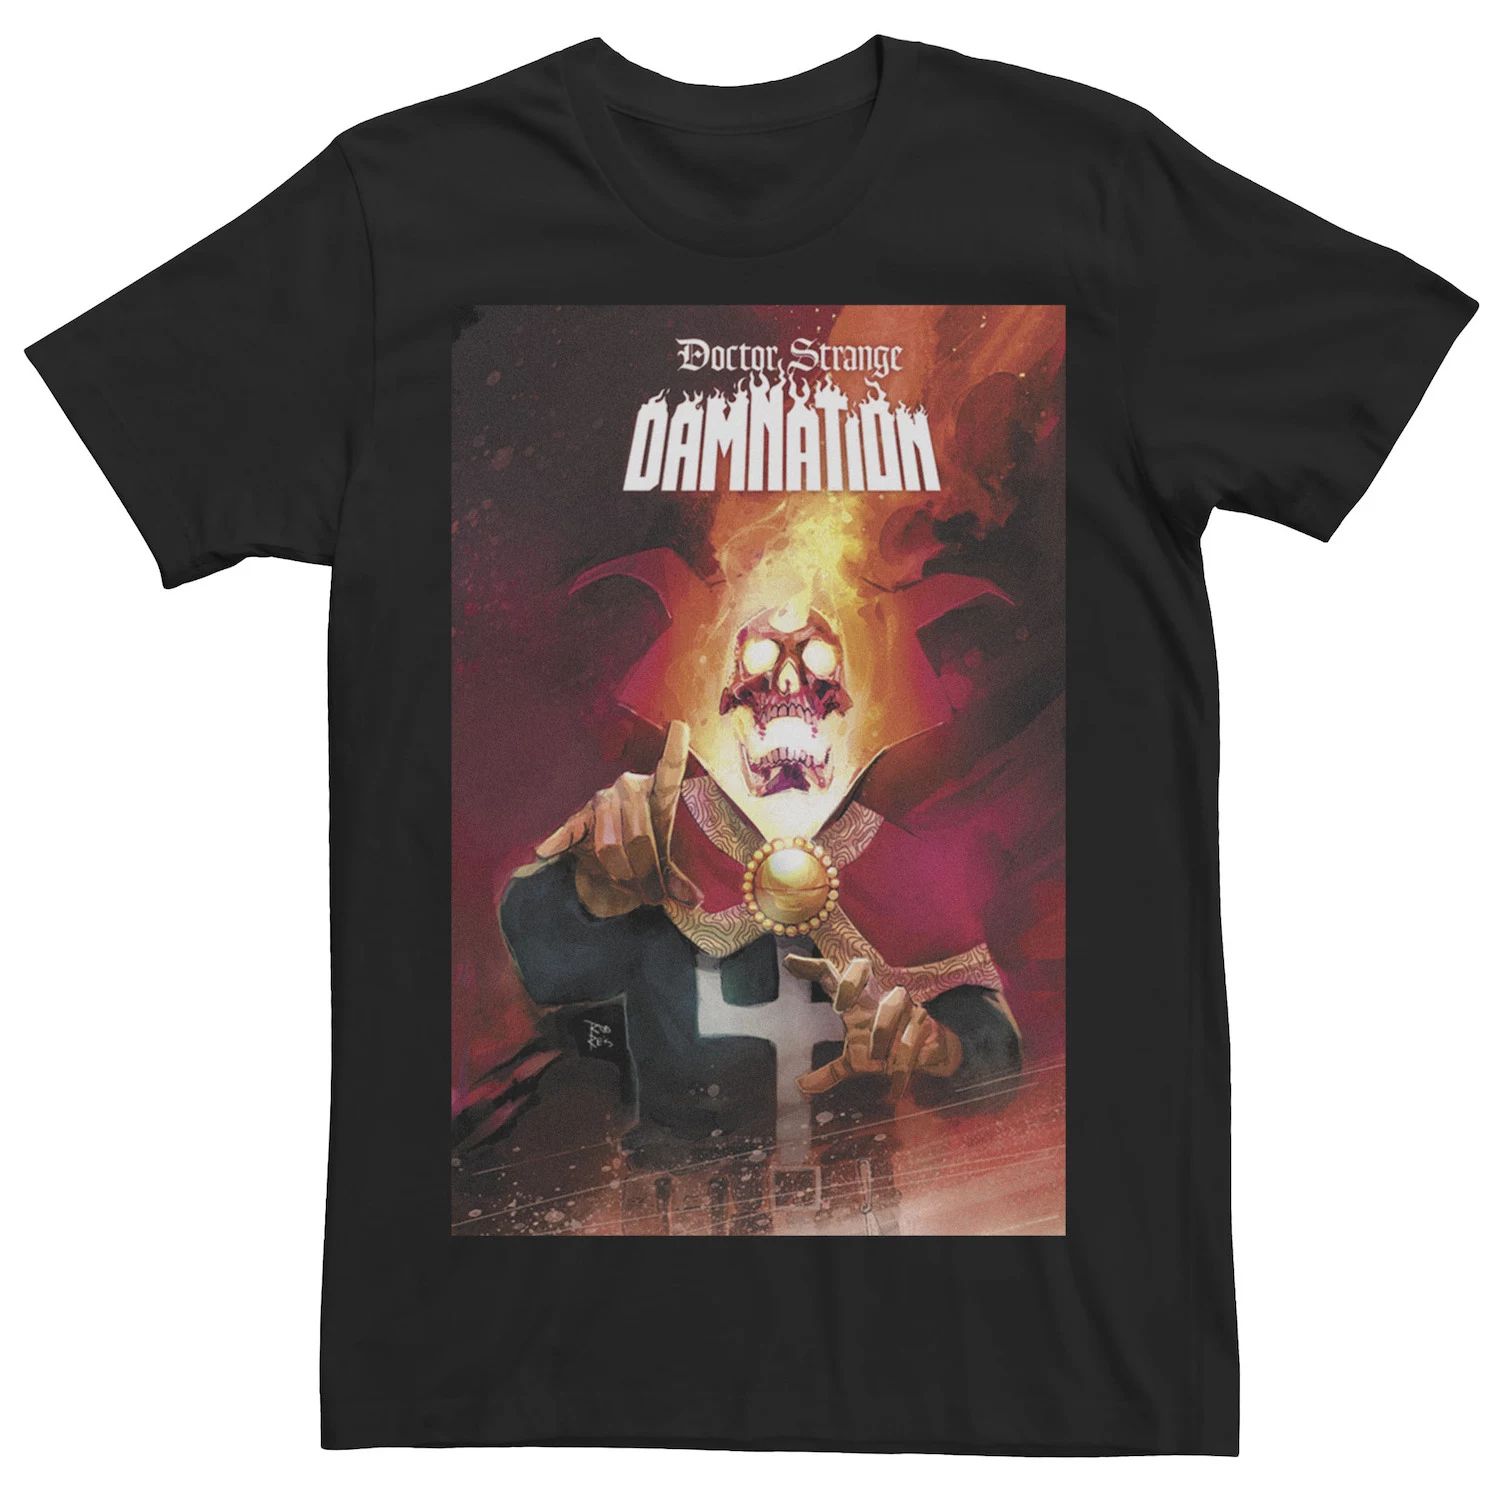 Мужская футболка с обложкой комикса Doctor Strange Damnation Marvel мужская черная футболка с обложкой комикса marvel prince namor черный